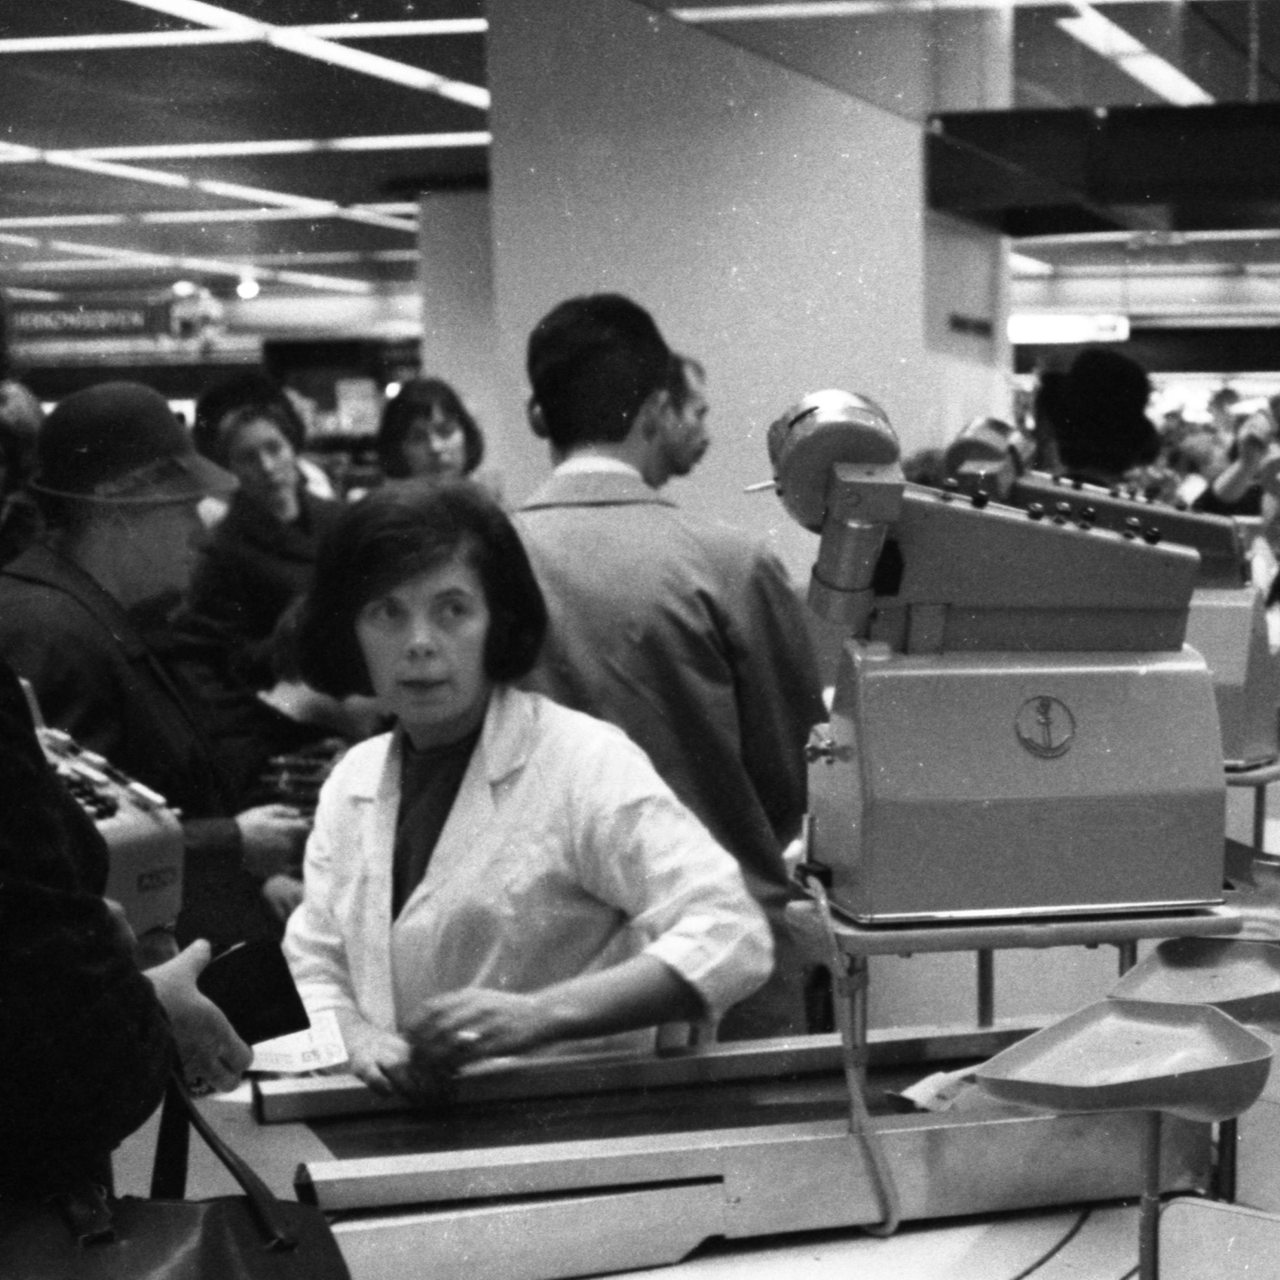 Einkaufen im Supermarkt 1965 in Bochum